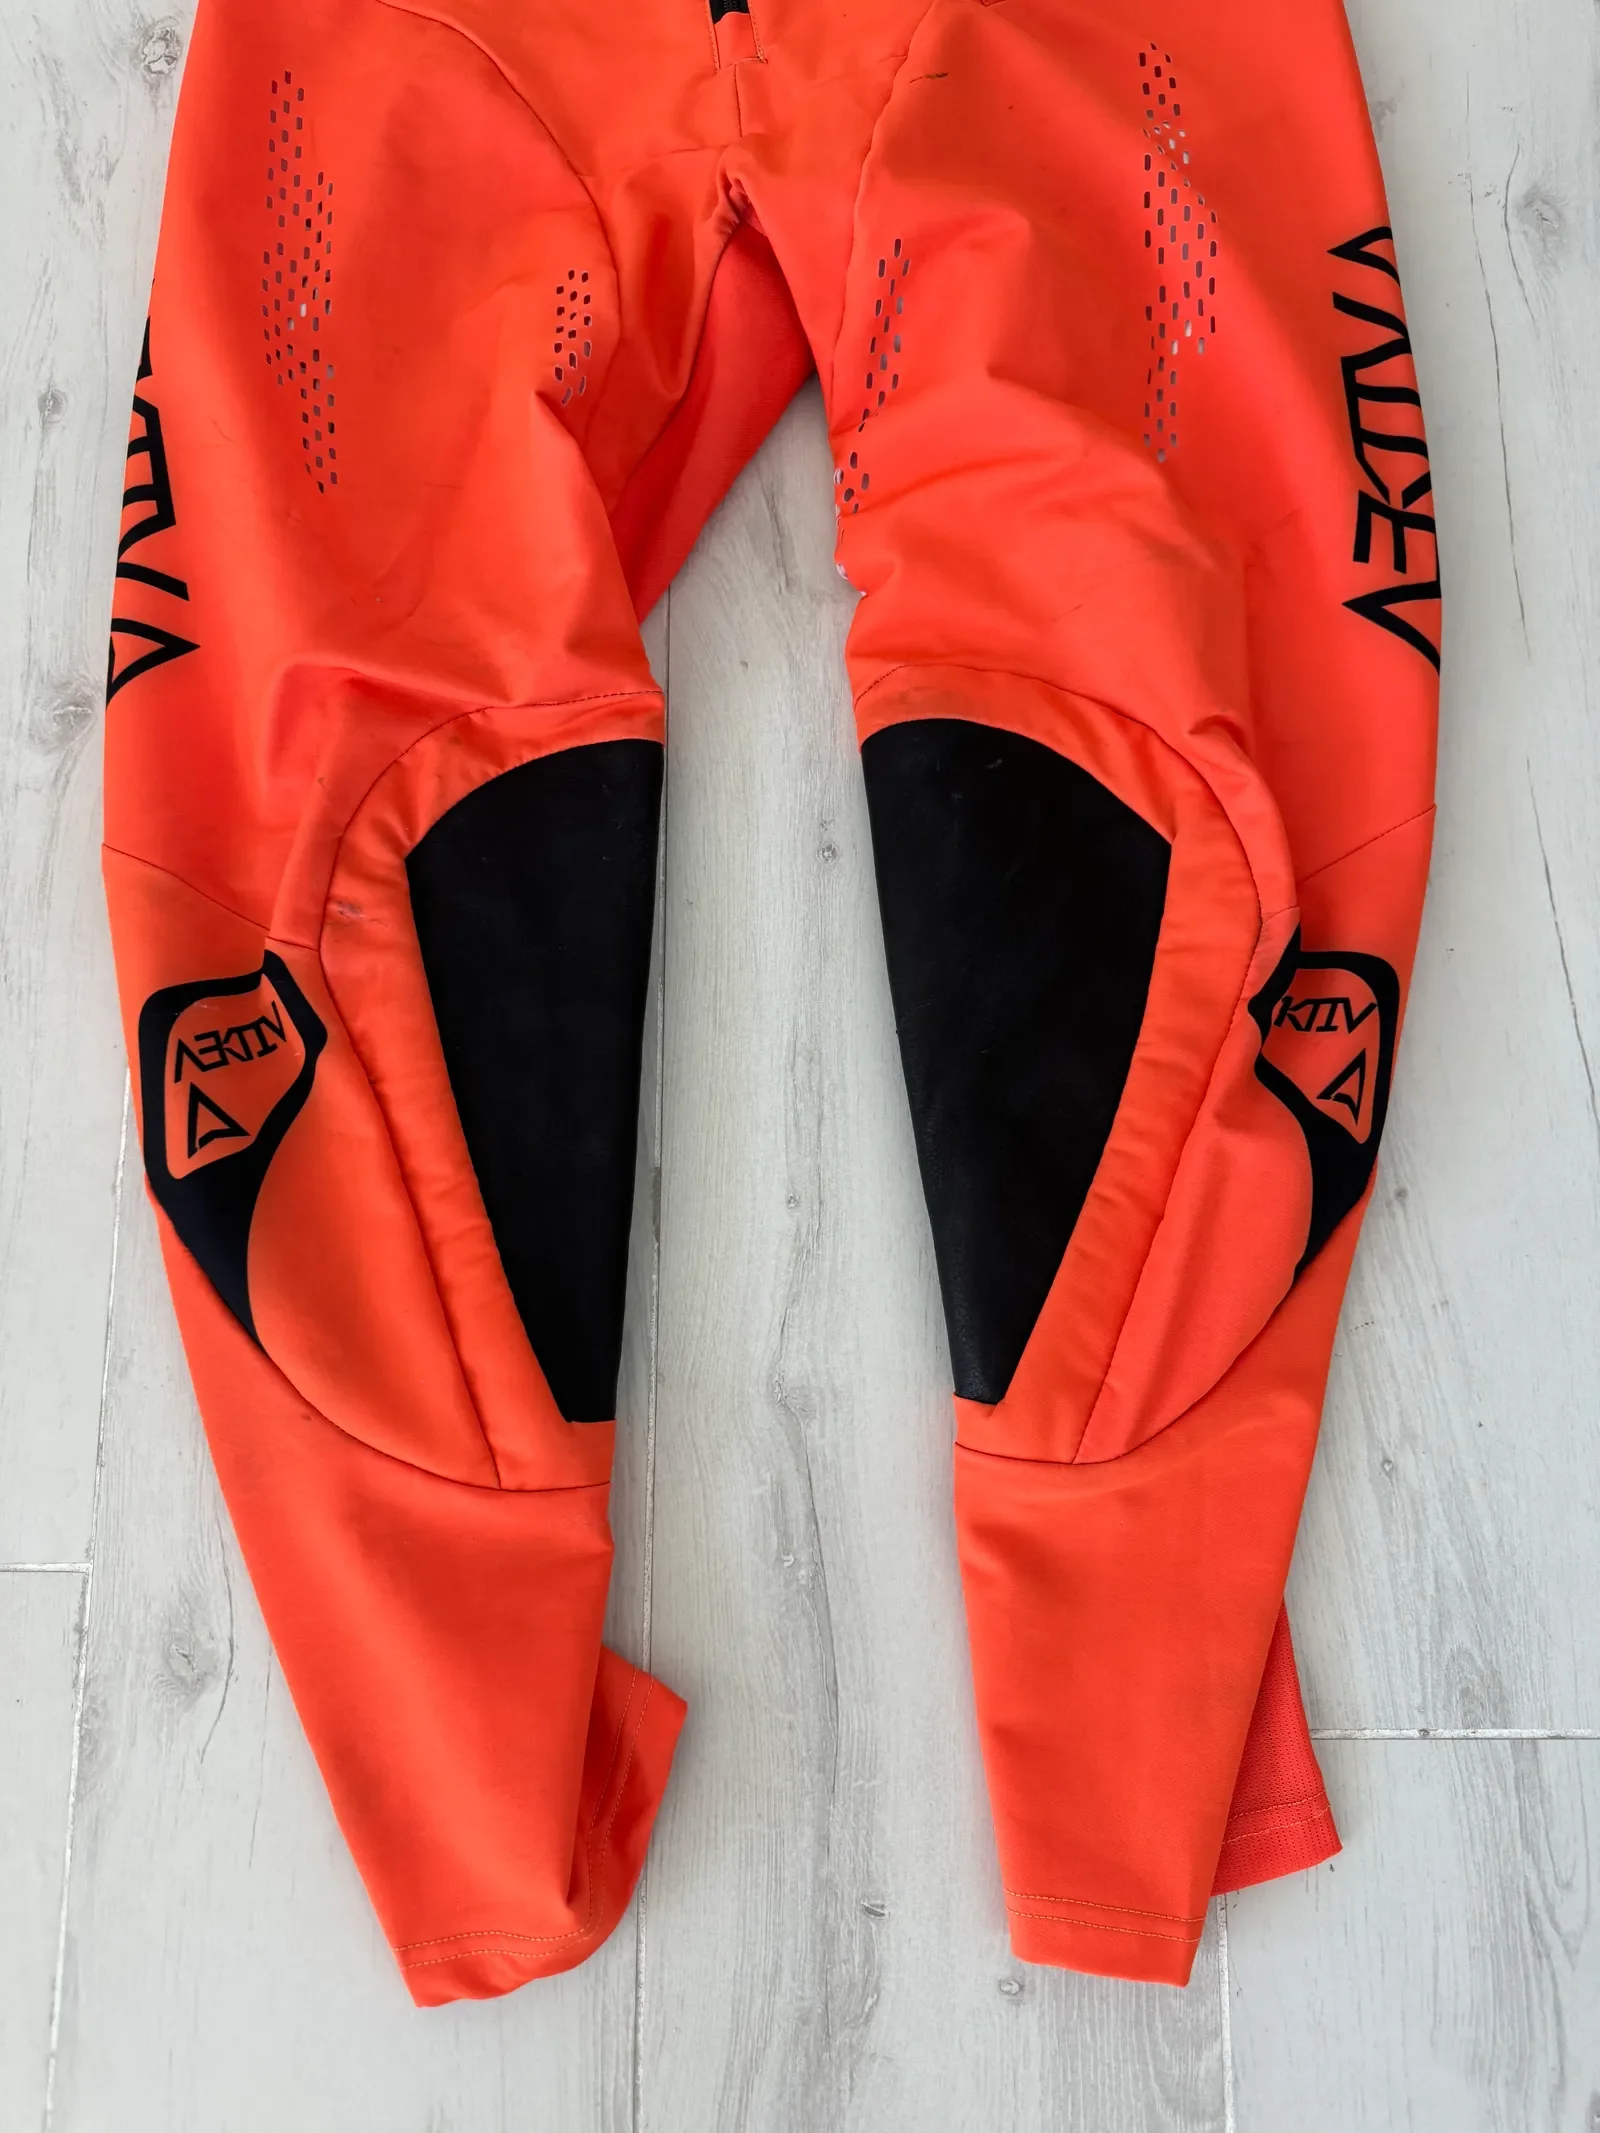 Aektiv Velo Orange Pants Size 32